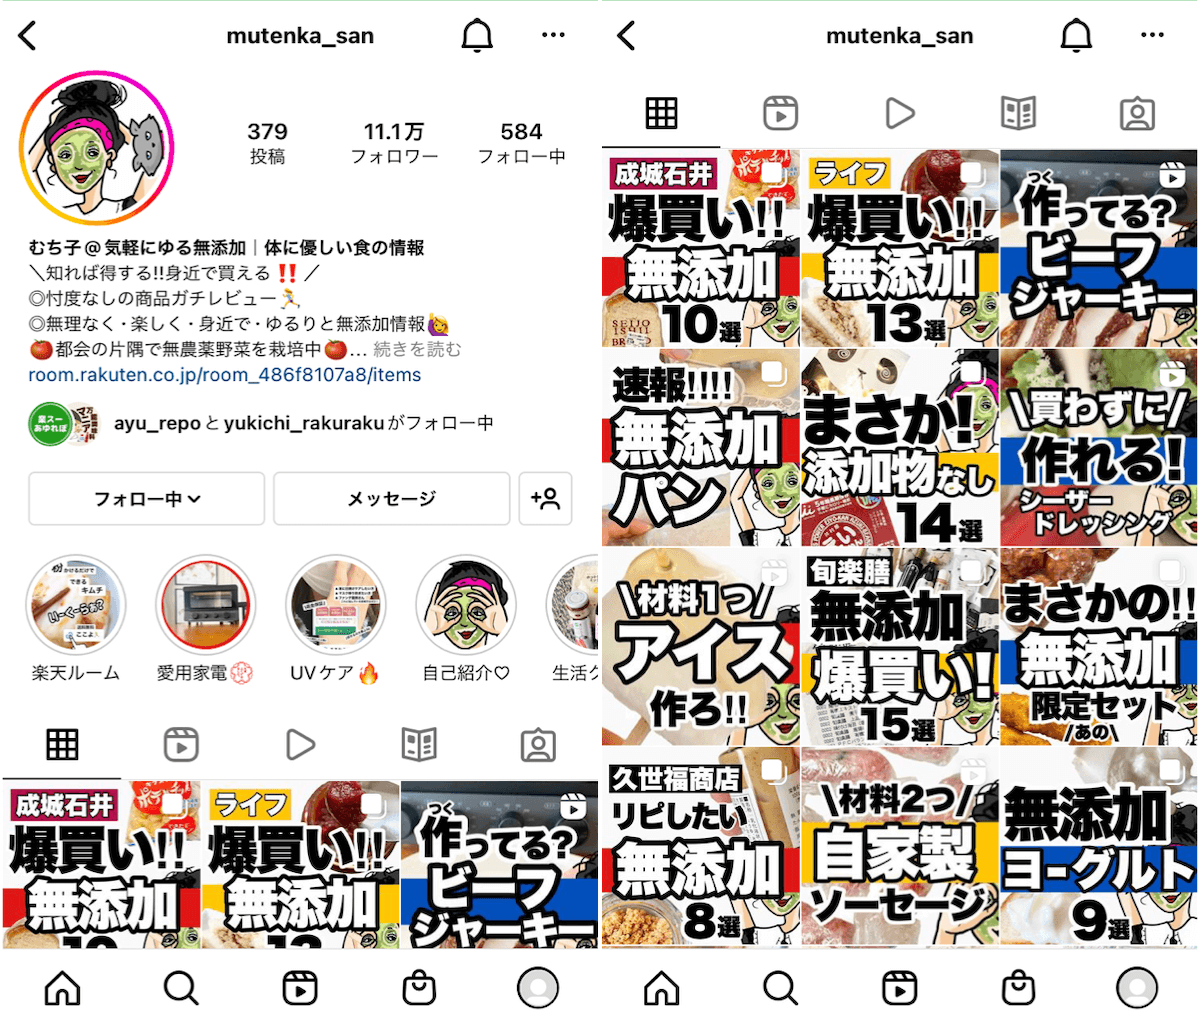 instagram-syokuhin-mutenka_san